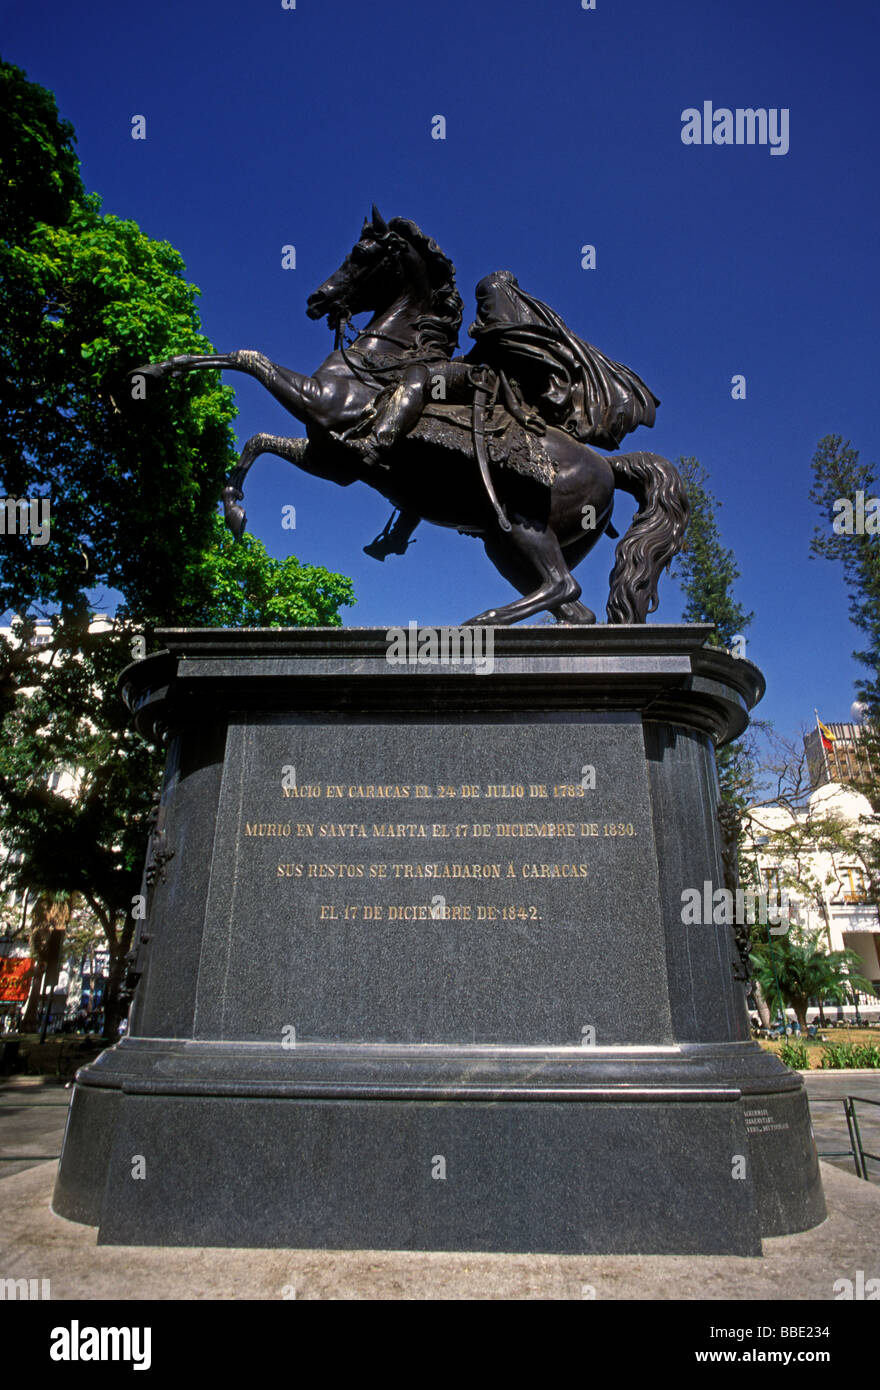 equestrian statue, statue of Simon Bolivar, Simon Bolivar, Plaza Bolivar, city of Caracas, Venezuela Stock Photo